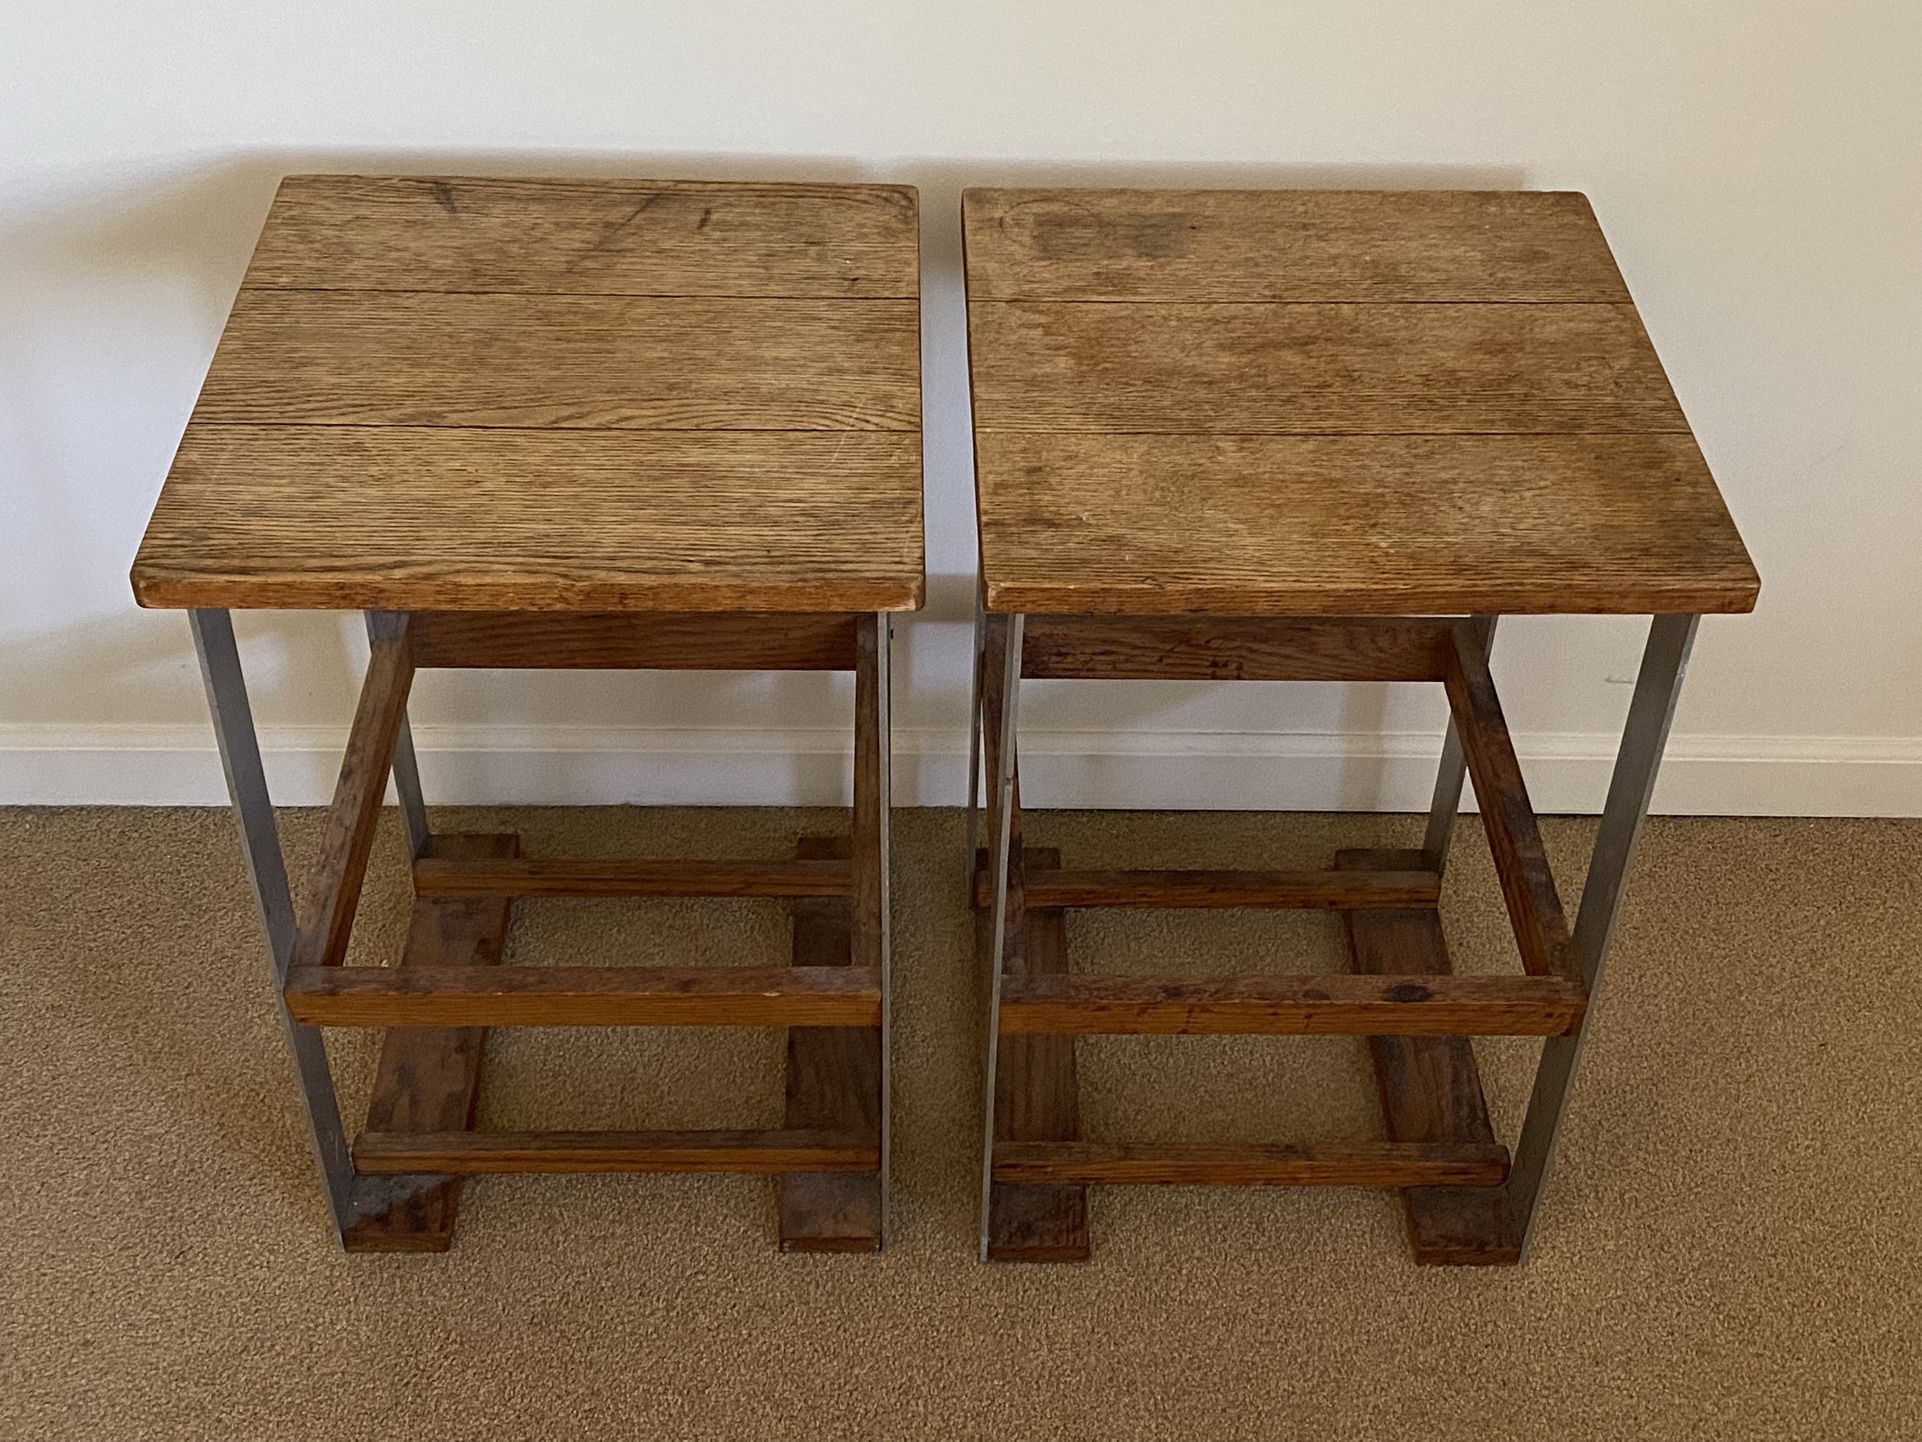 Metal / Wood End Tables Or Nightstands